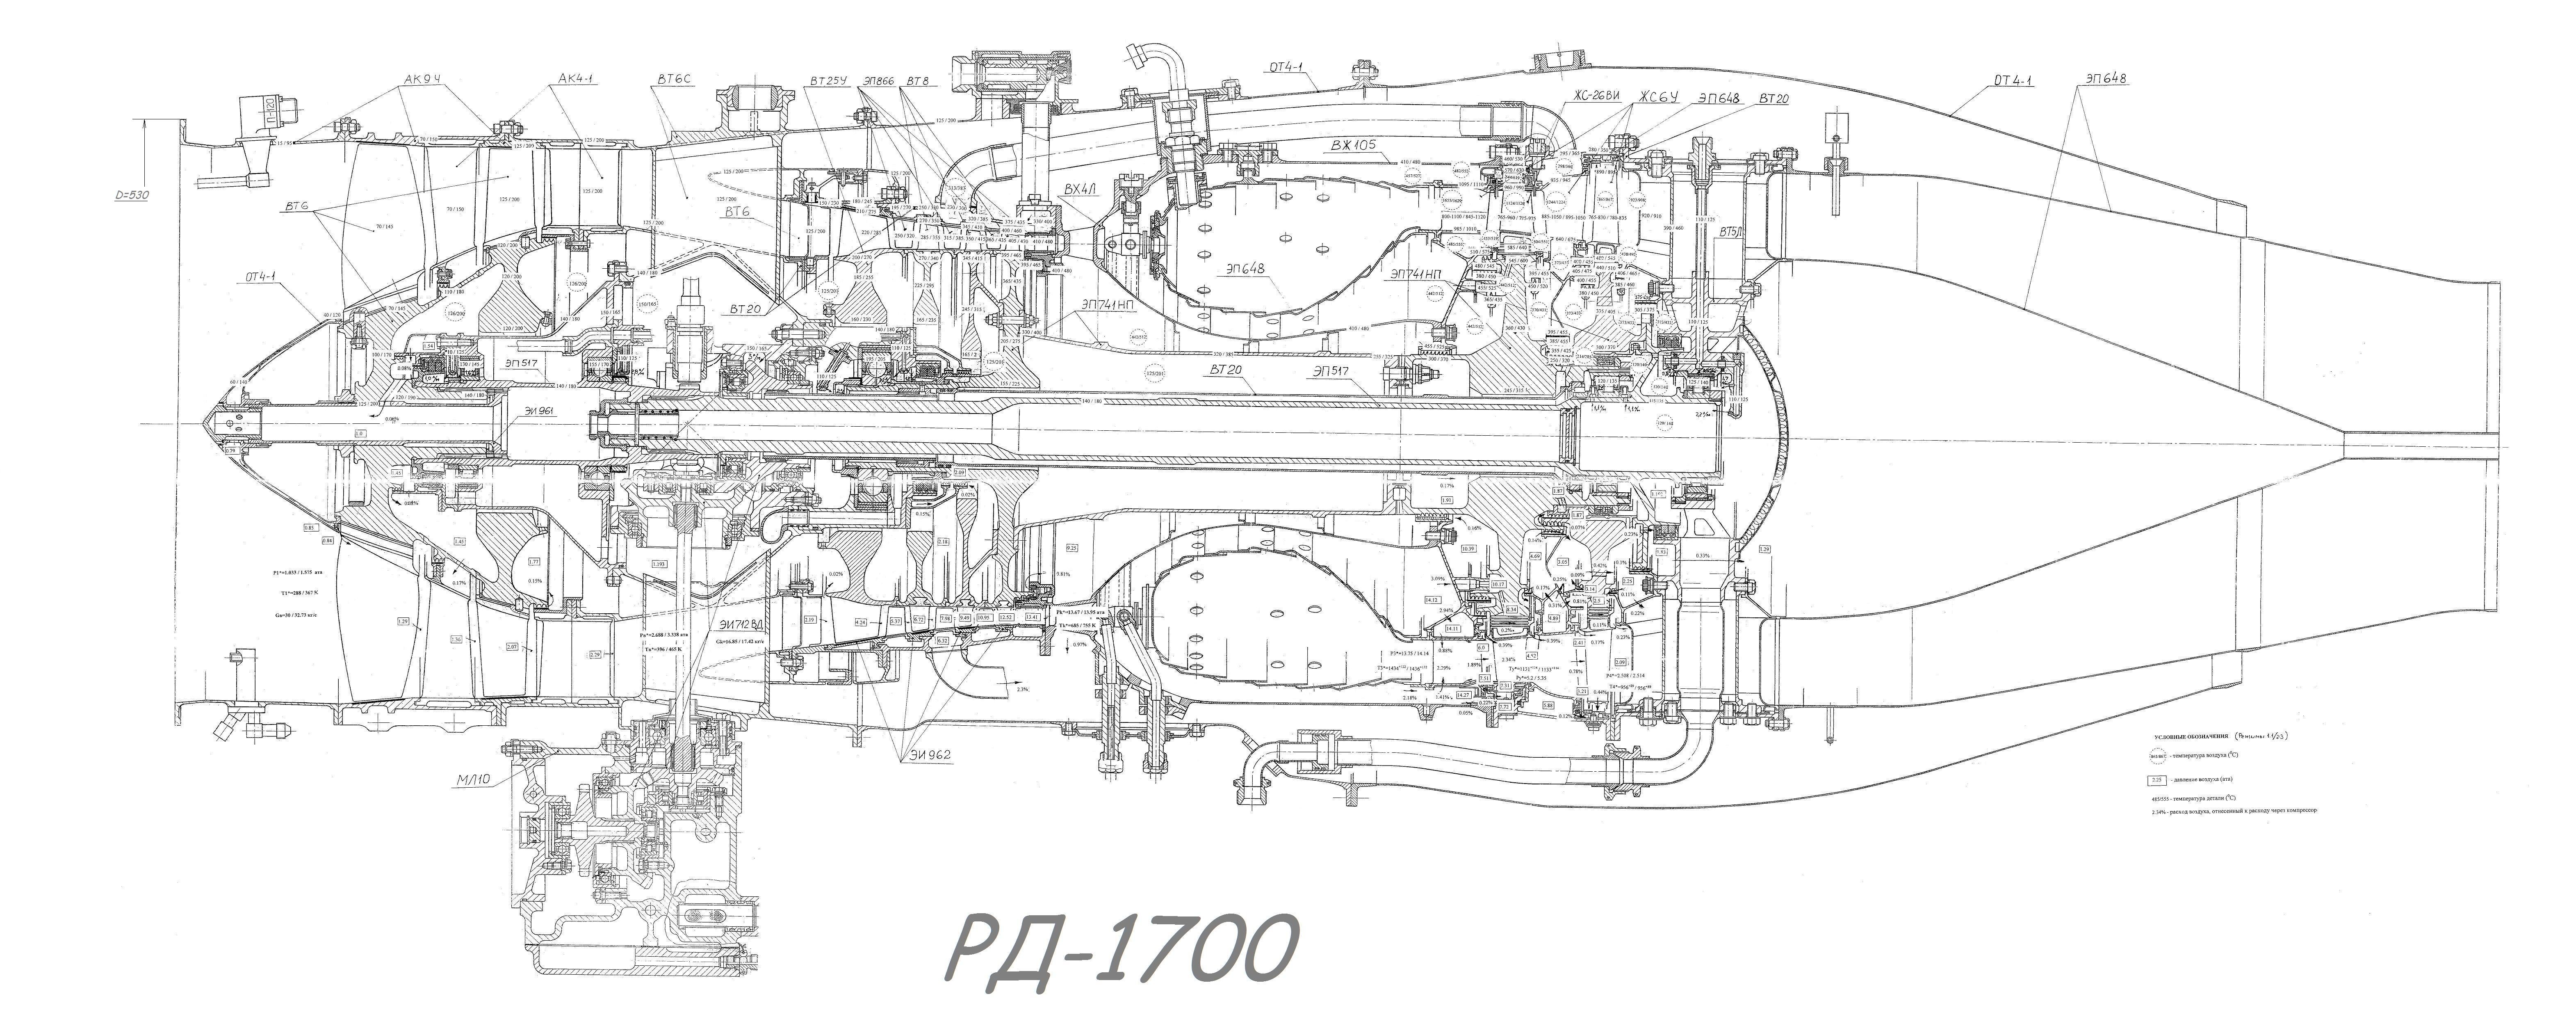 Пд 90. АИ-222-25 чертеж. РД-1700 двигатель. РД-1700 двигатель чертеж. ТВД М 601 чертеж.